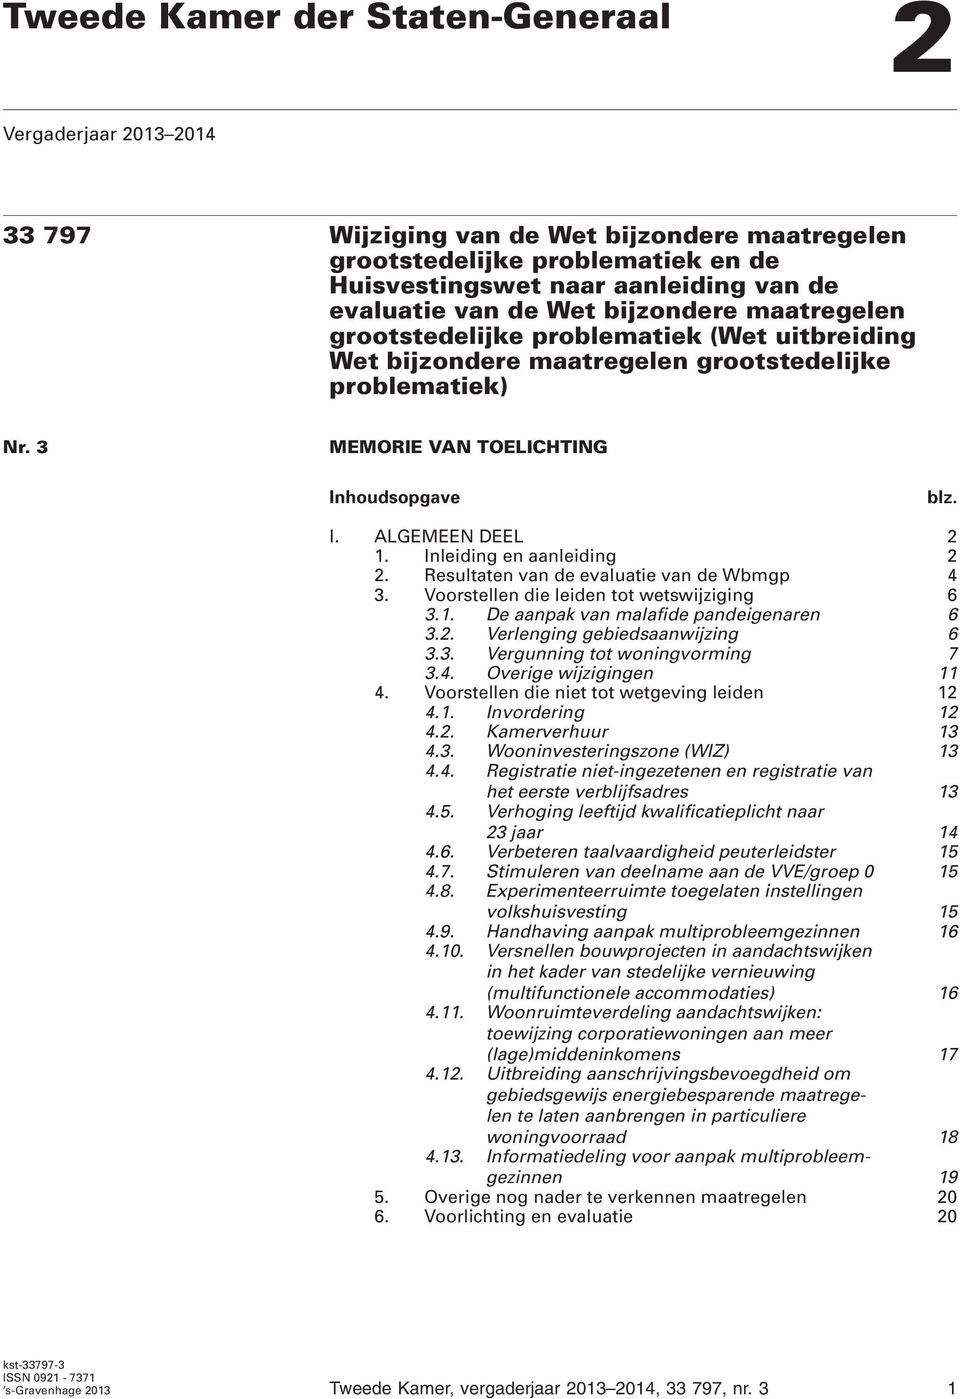 Inleiding en aanleiding 2 2. Resultaten van de evaluatie van de Wbmgp 4 3. Voorstellen die leiden tot wetswijziging 6 3.1. De aanpak van malafide pandeigenaren 6 3.2. Verlenging gebiedsaanwijzing 6 3.